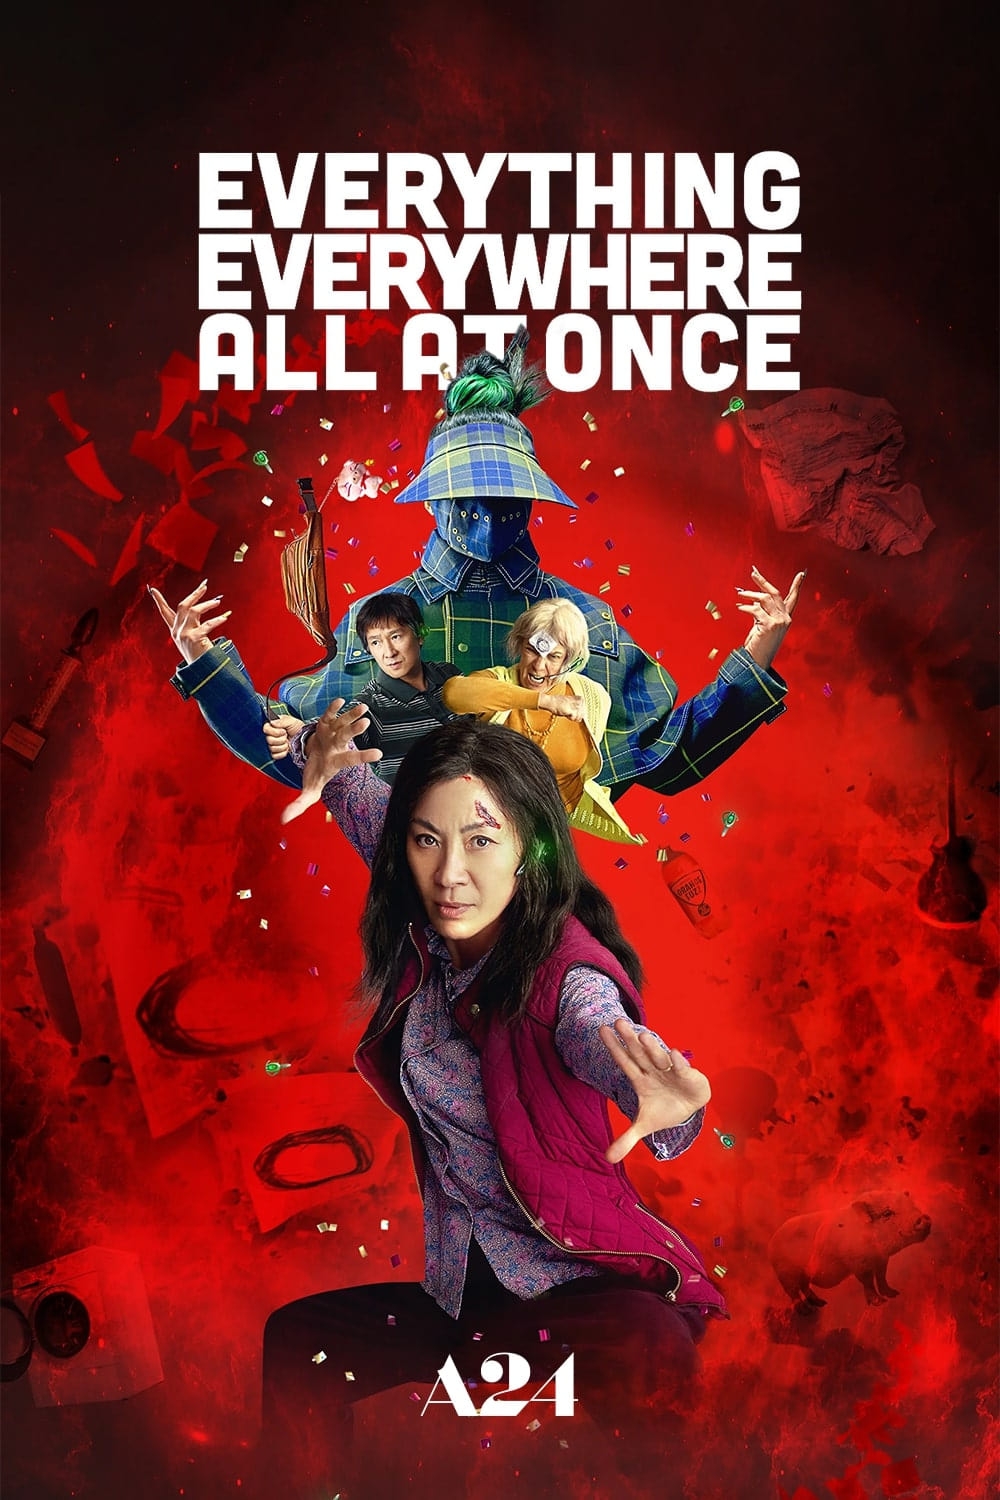 (Review) 'Everything Everywhere All At Once': Đa vũ trụ hỗn loạn hấp dẫn ra sao mà mang về 7 giải Oscar?